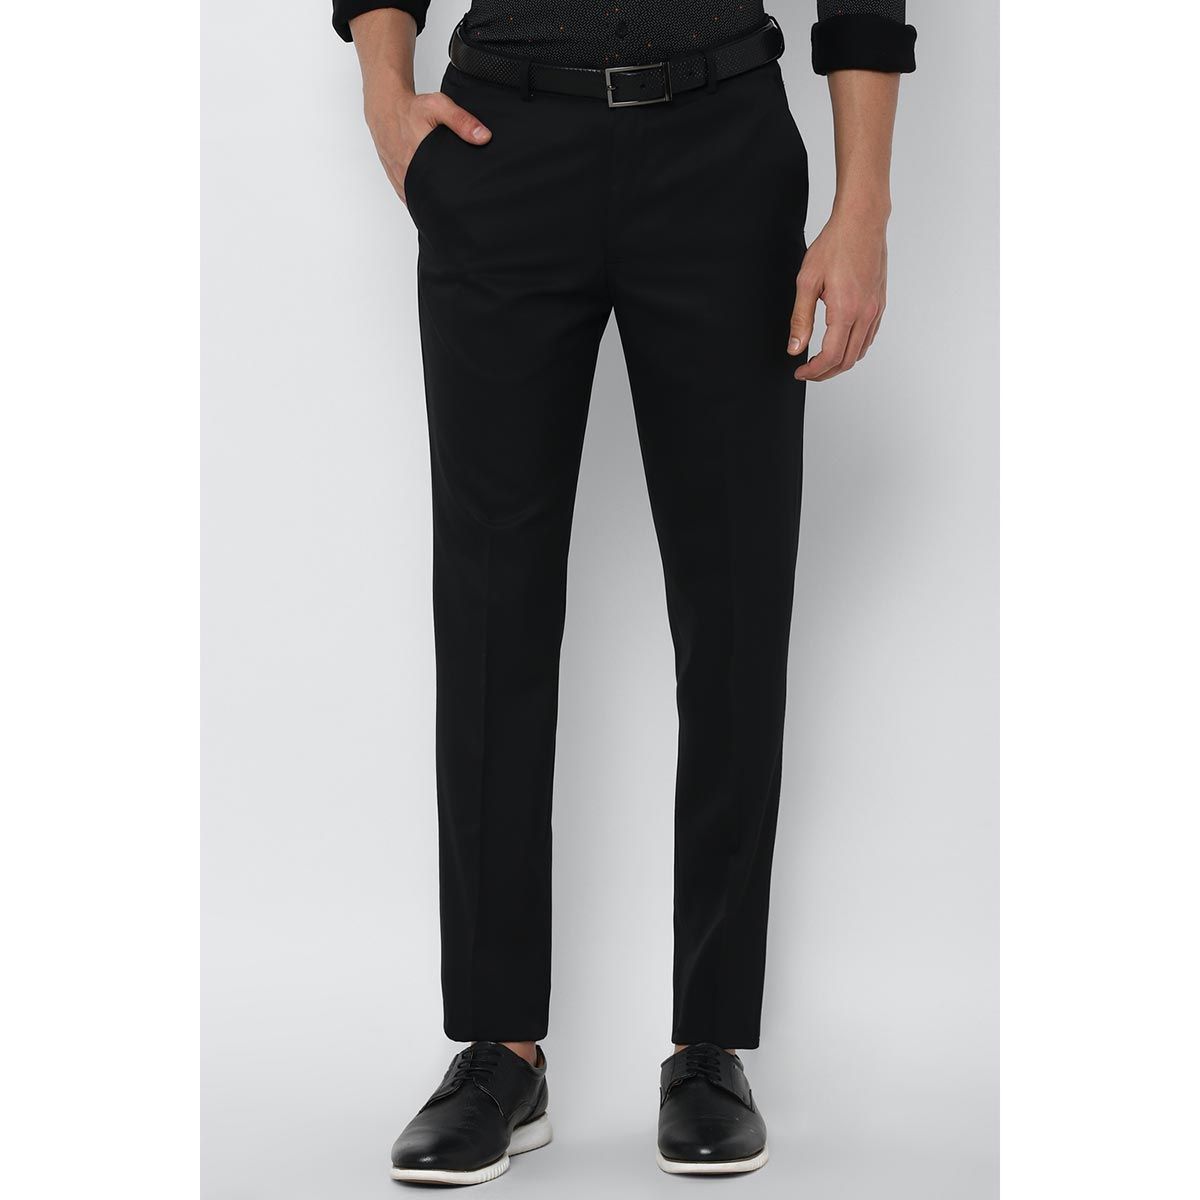 Allen Solly Slim Fit Men Black Trousers  Buy Allen Solly Slim Fit Men Black  Trousers Online at Best Prices in India  Flipkartcom